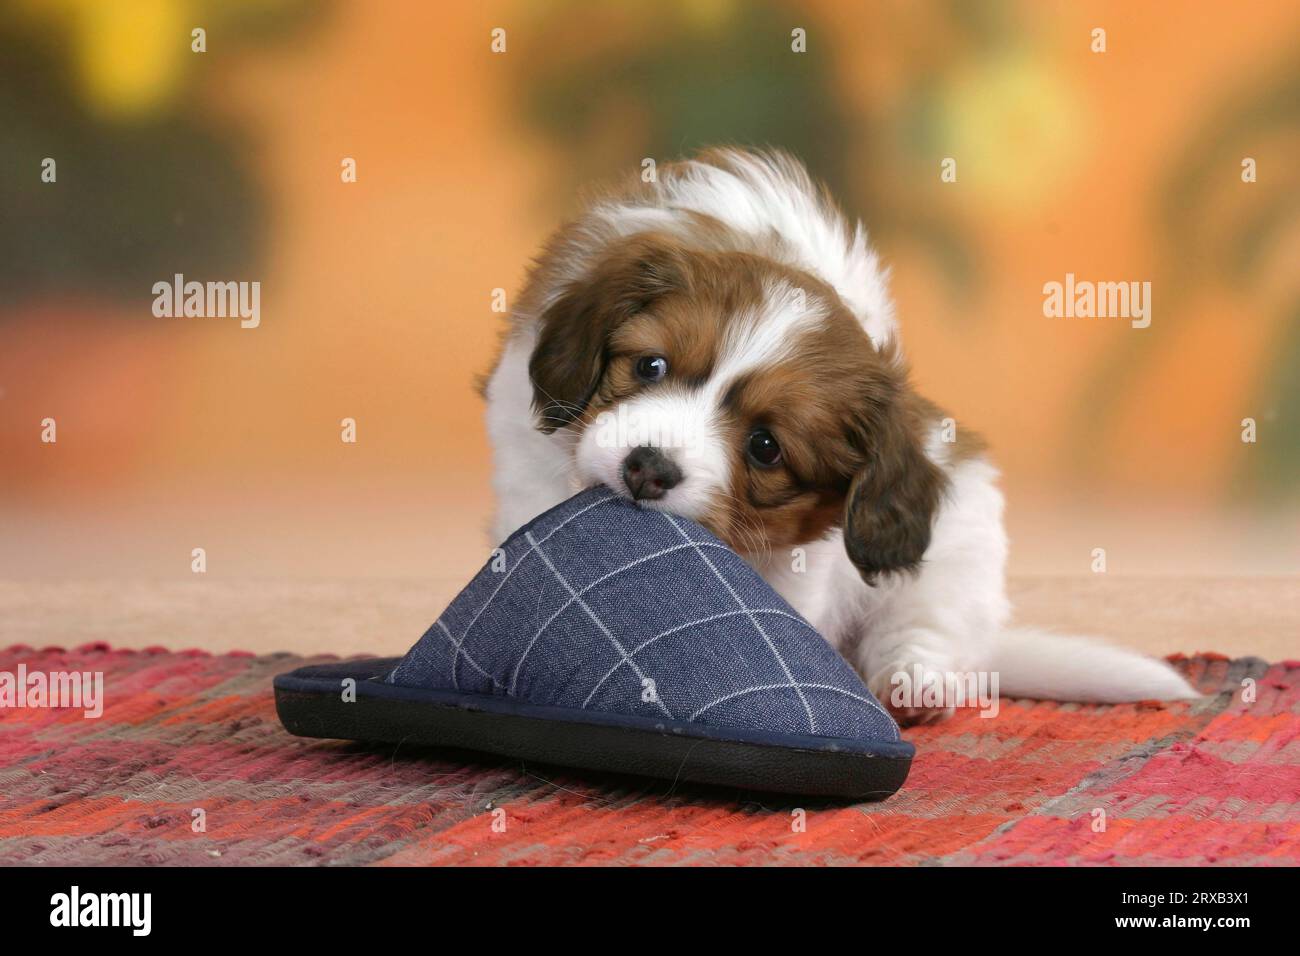 Kooikerhondje, puppy, 6 weeks, gnaws on slipper Stock Photo